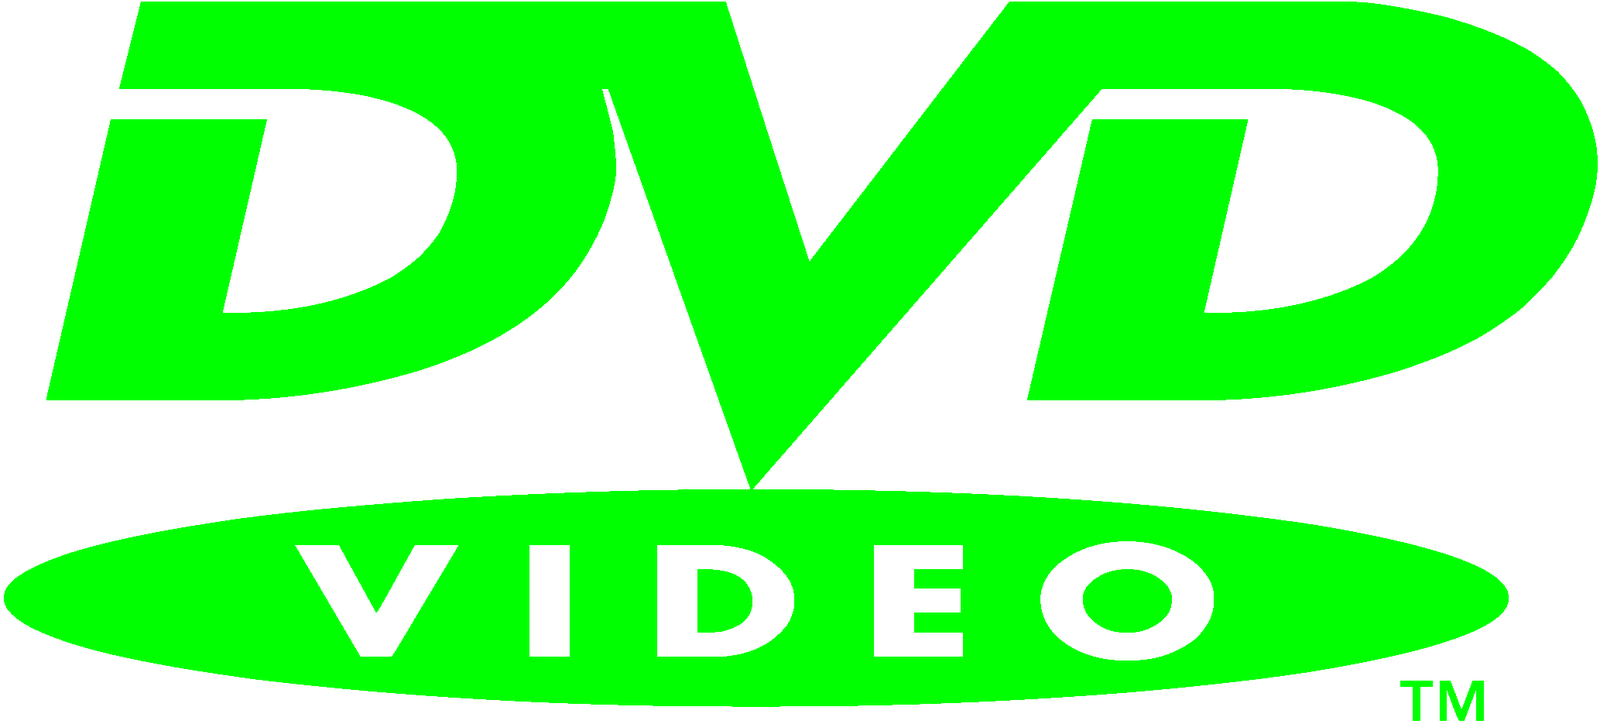 Green DVD Logo - Dvd logos clipart Collection. HD dvd logo.gif; phantom